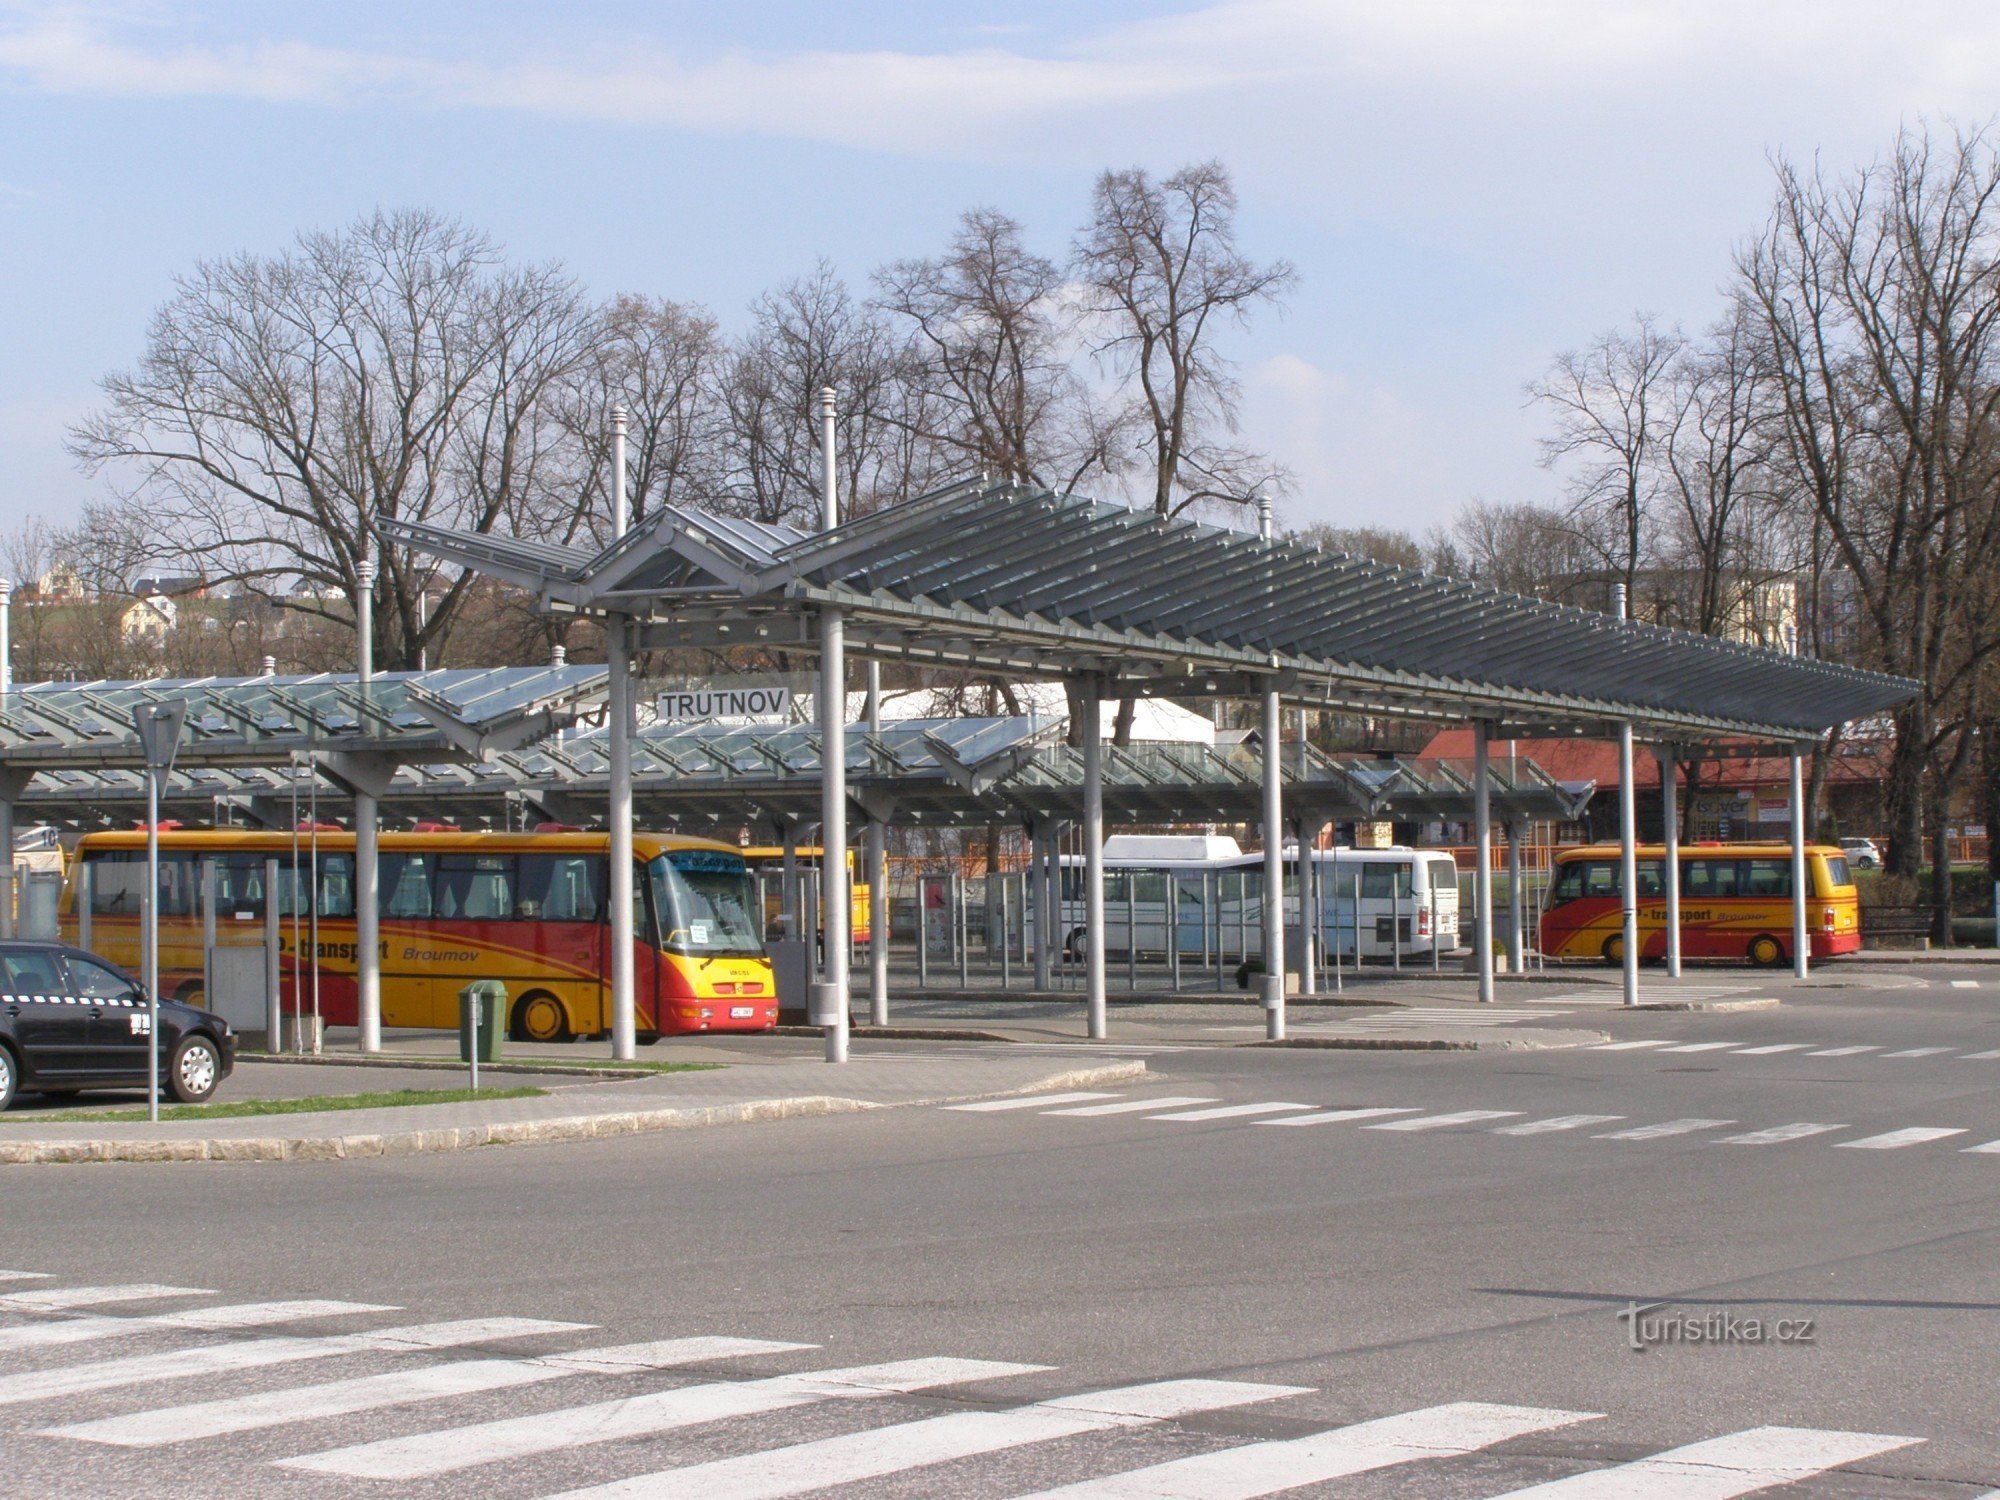 Dworzec autobusowy Trutnov